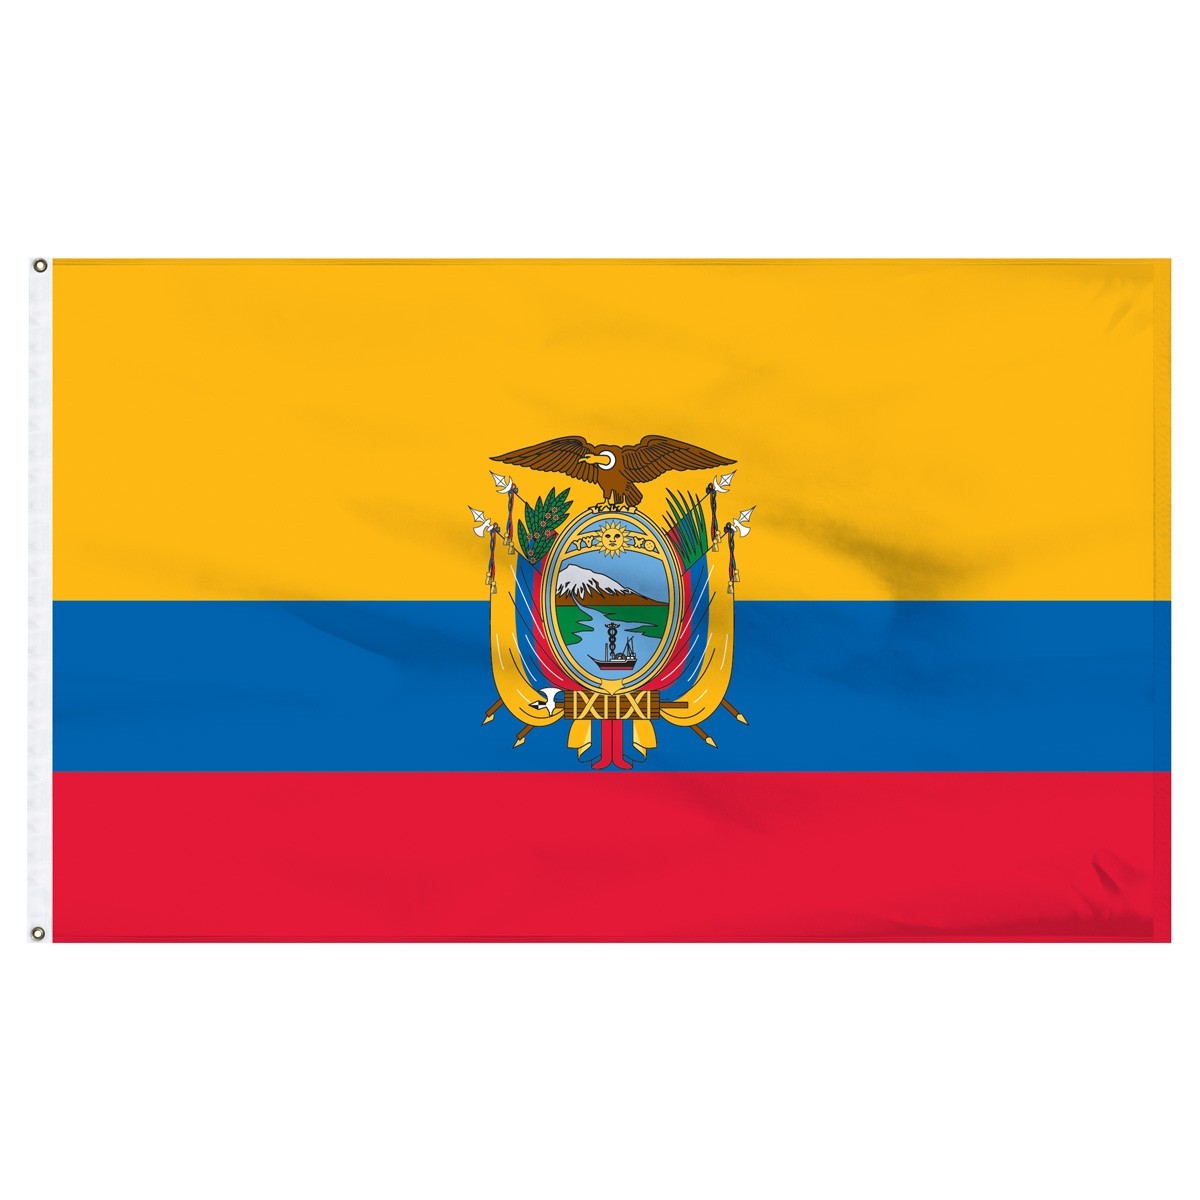 Ecuador flag for sale